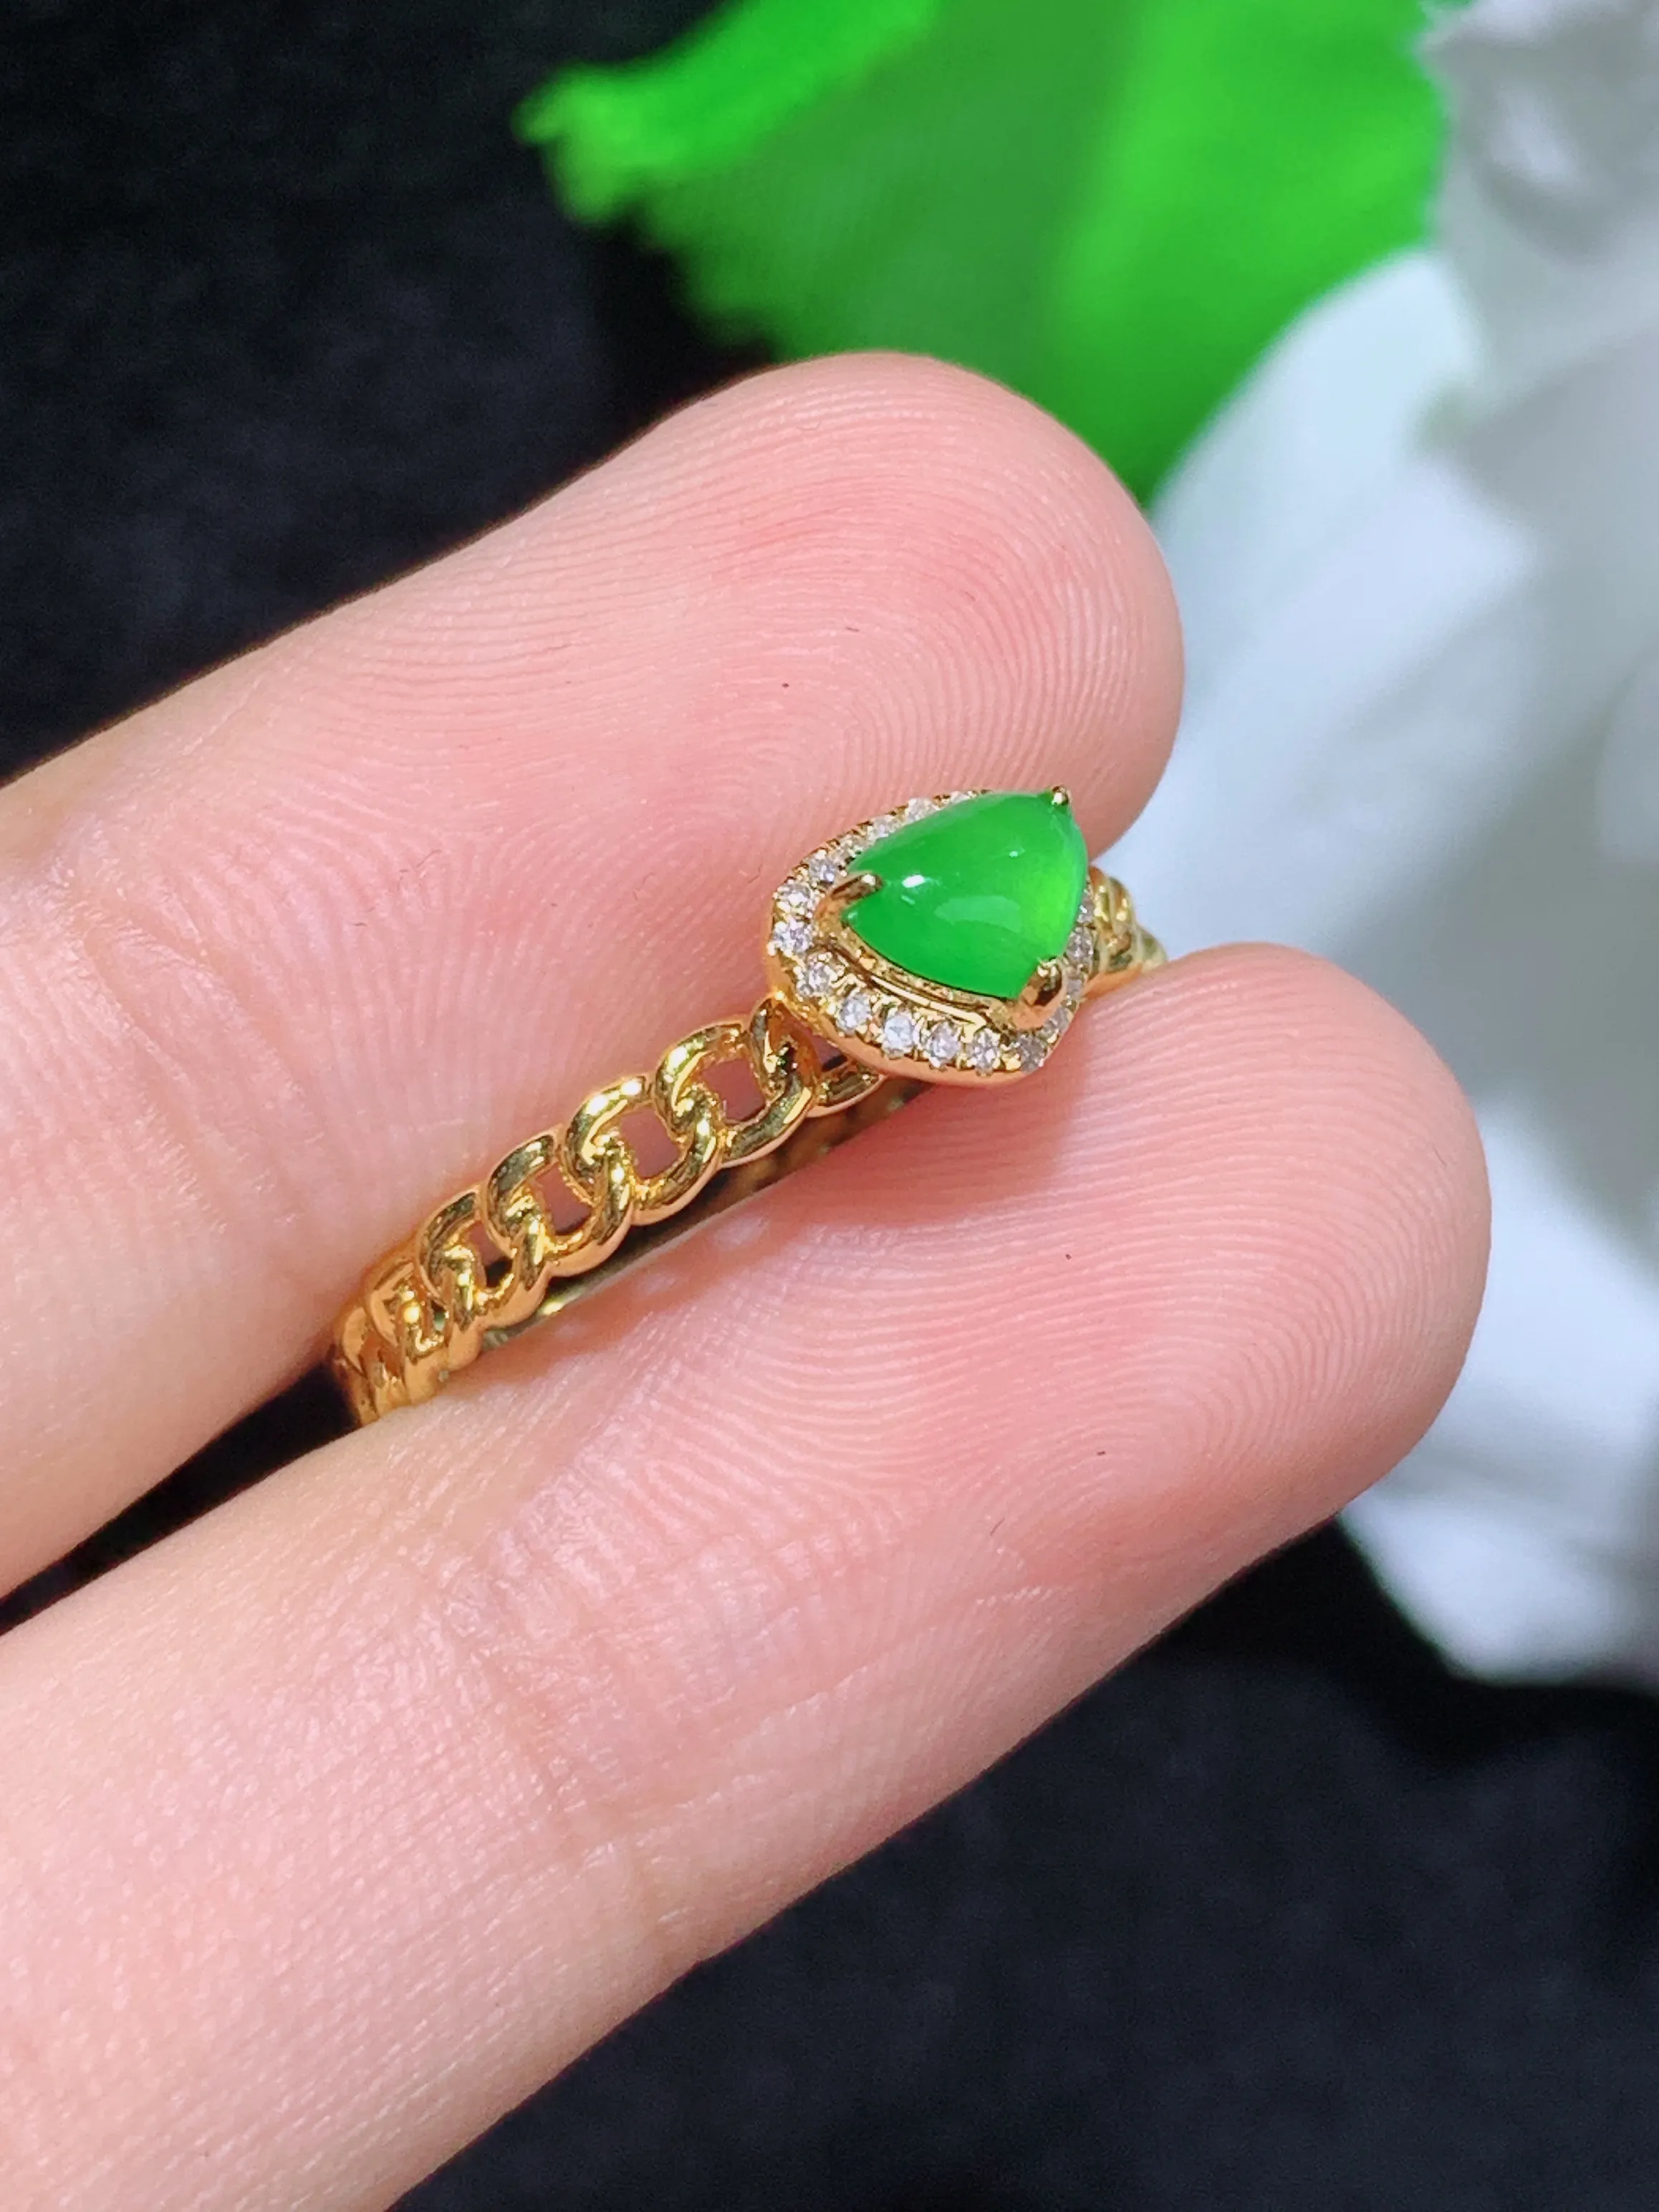 满绿心形戒指，18k金镶嵌，颜色清爽，水润，整体规格：19.1-5.6